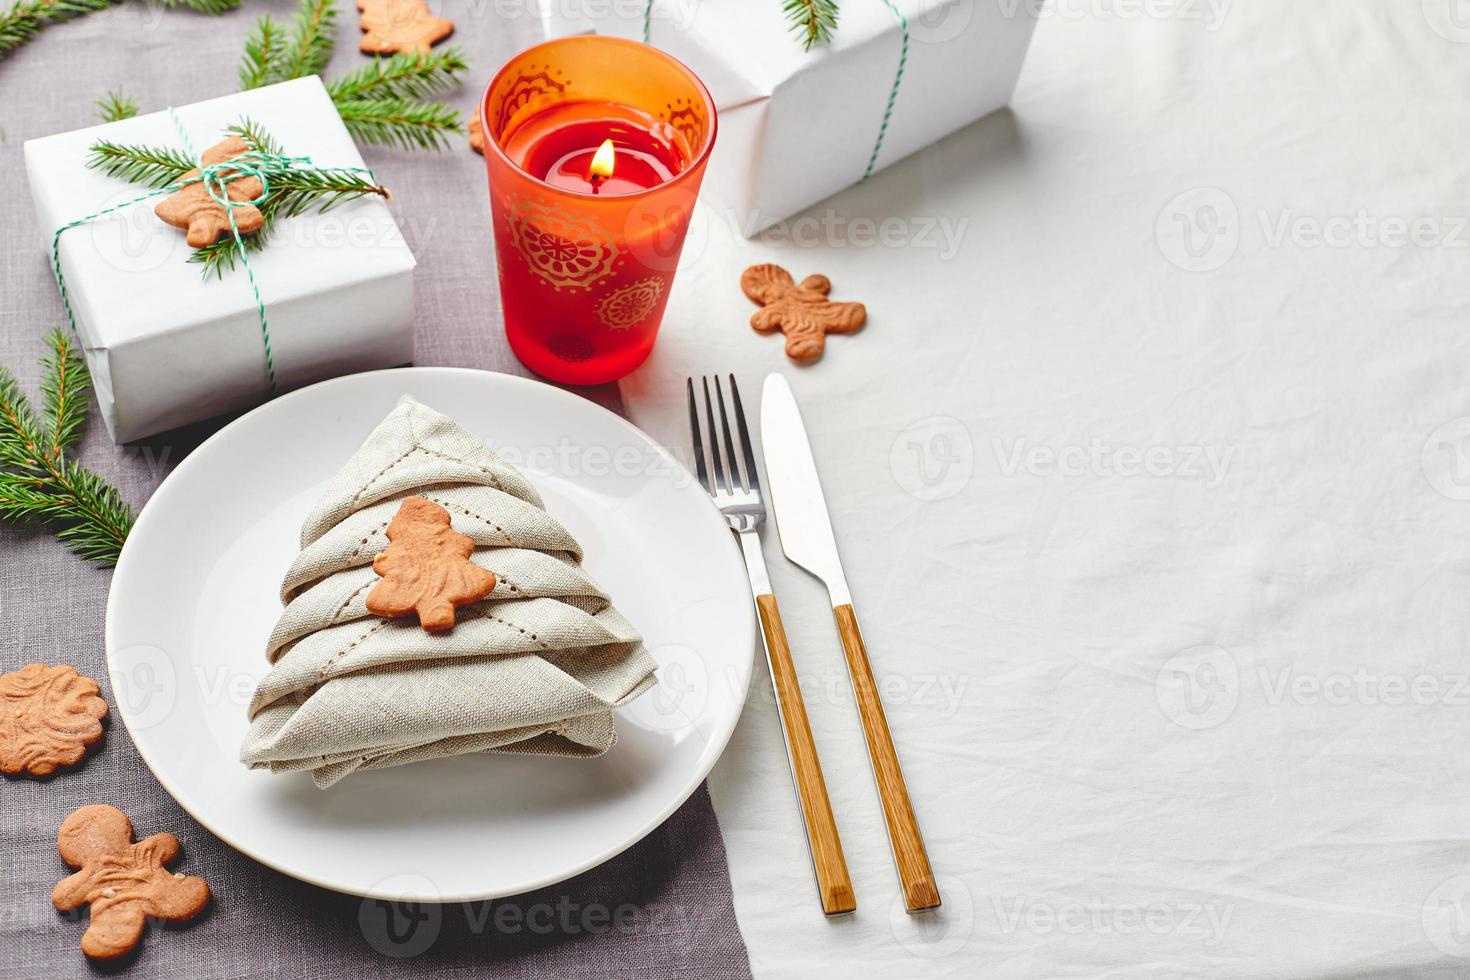 servett i de form av en jul träd på en tallrik på vit bordsduk med gåvor och dekorationer med gran kvistar och pepparkaka småkakor foto